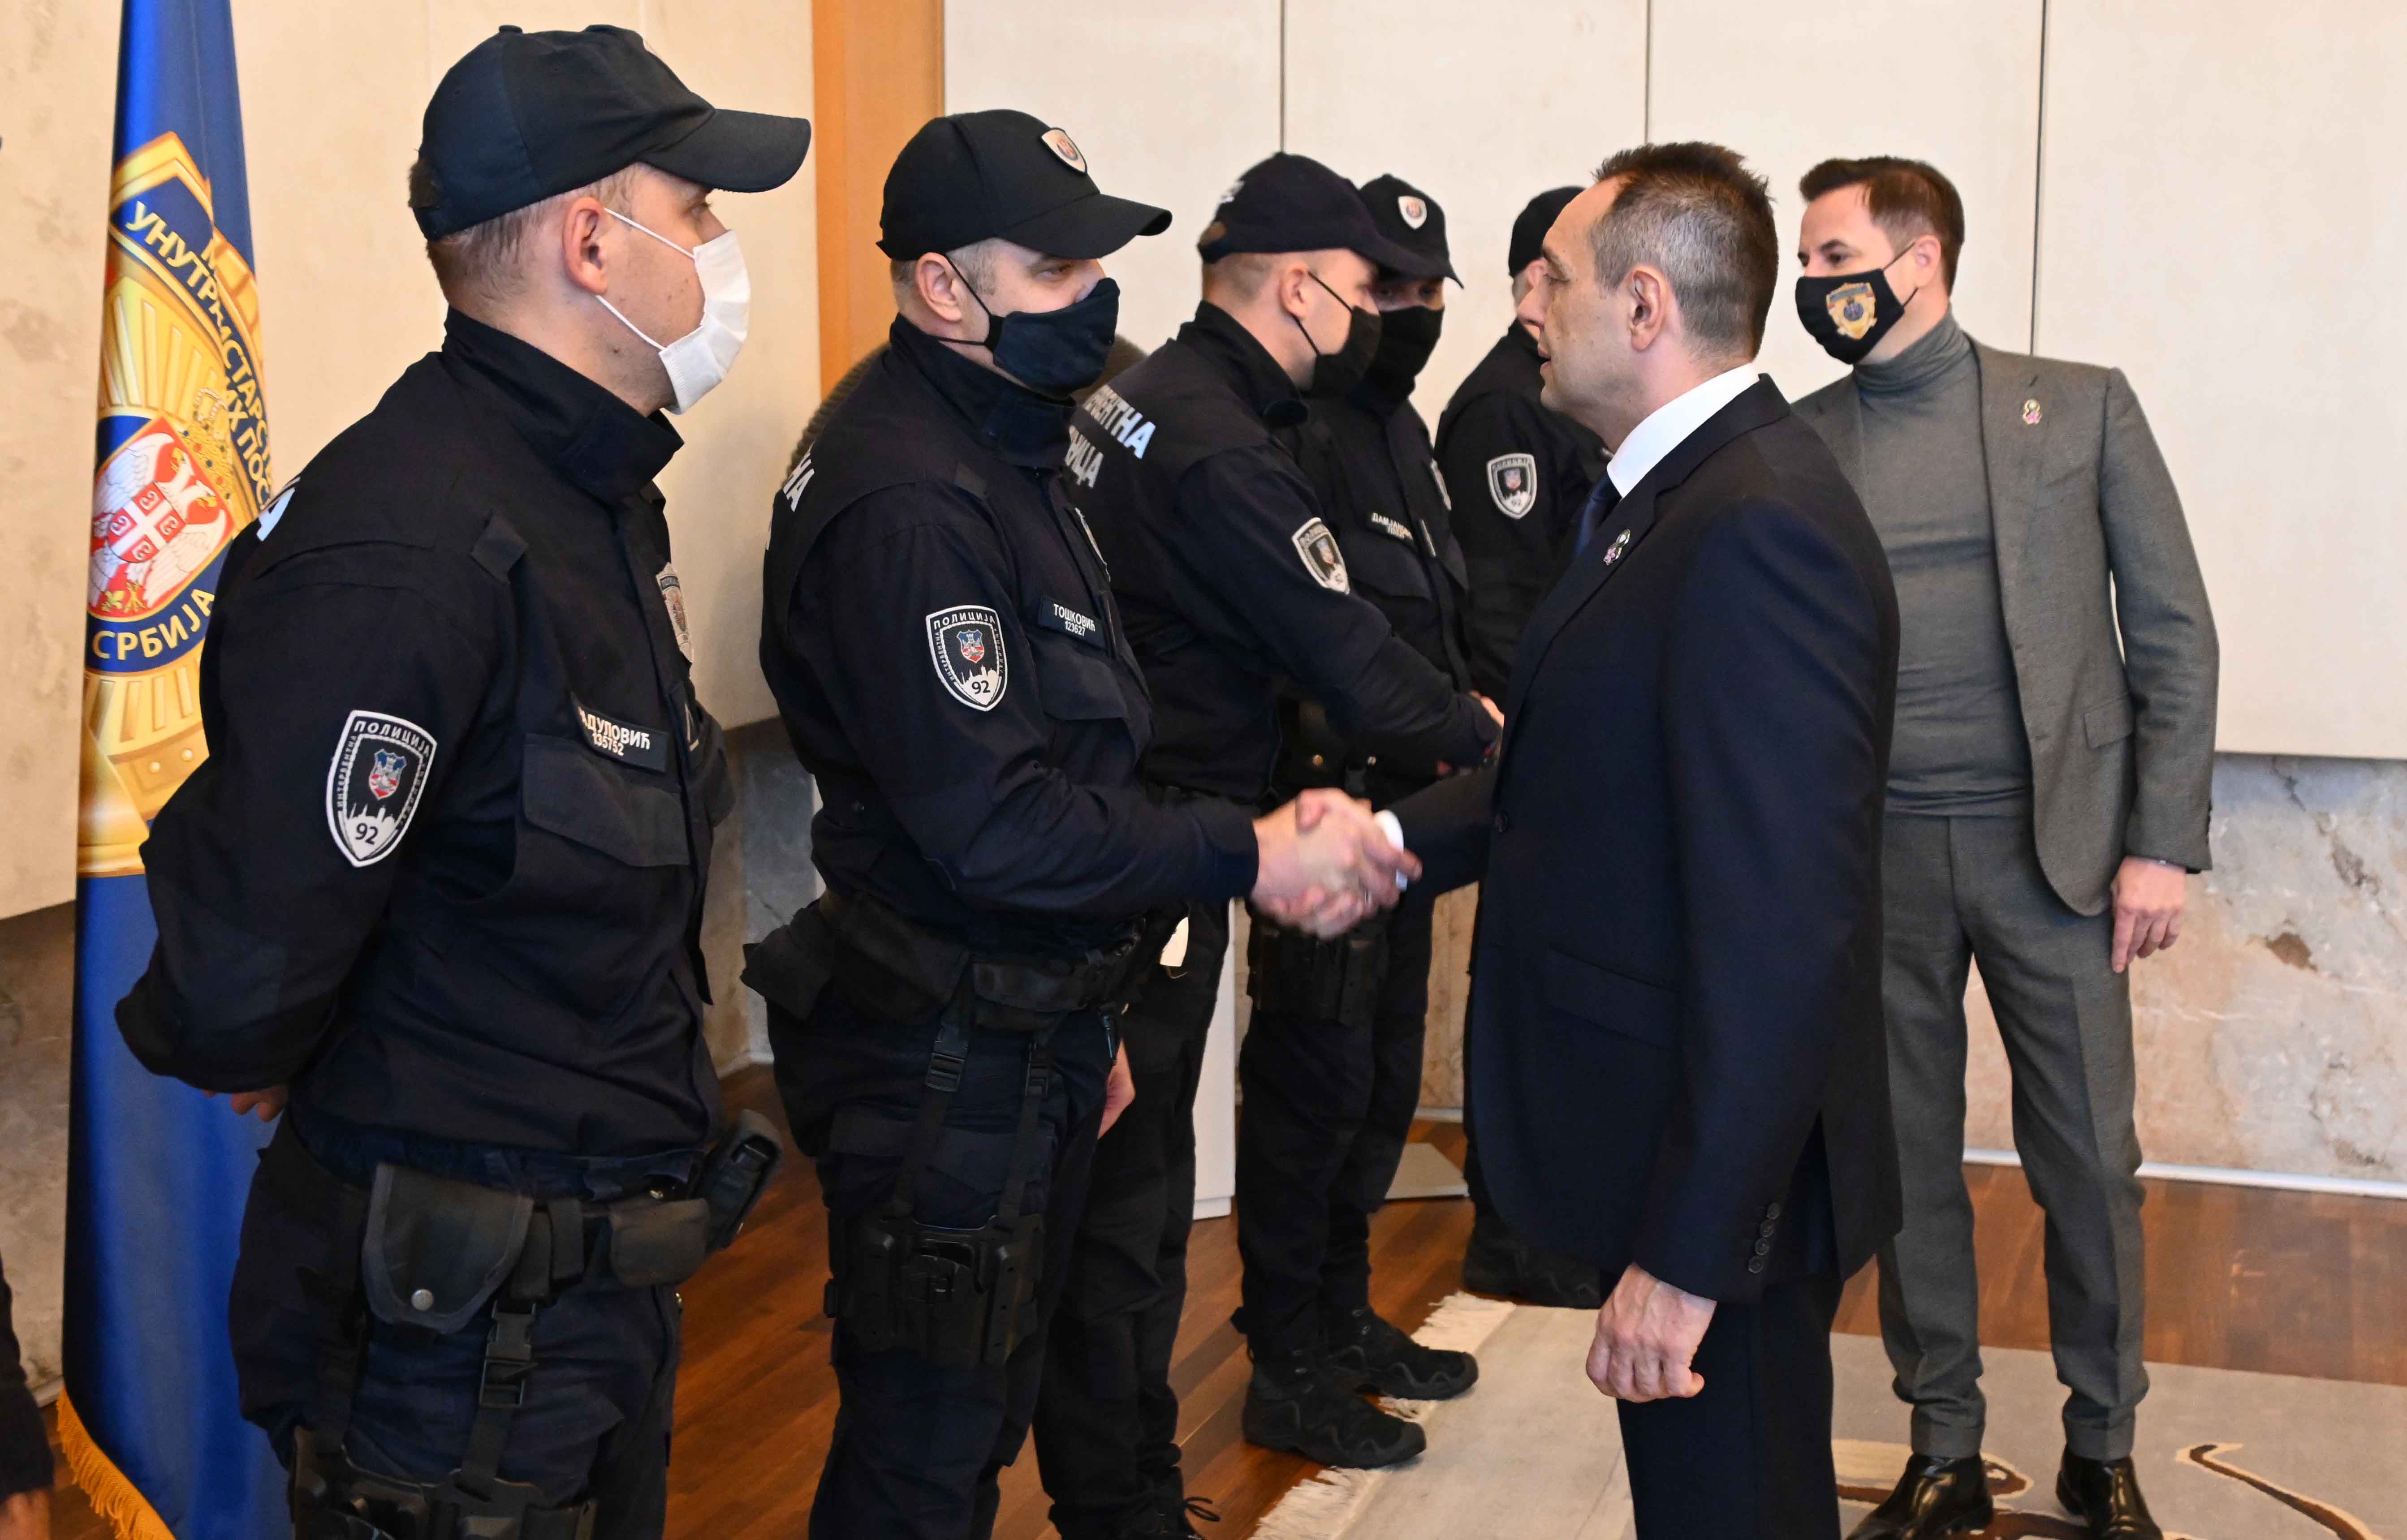 Министар Вулин: Свако ко се дрзне да нападне полицајца, наићи ће на адекватан одговор државе